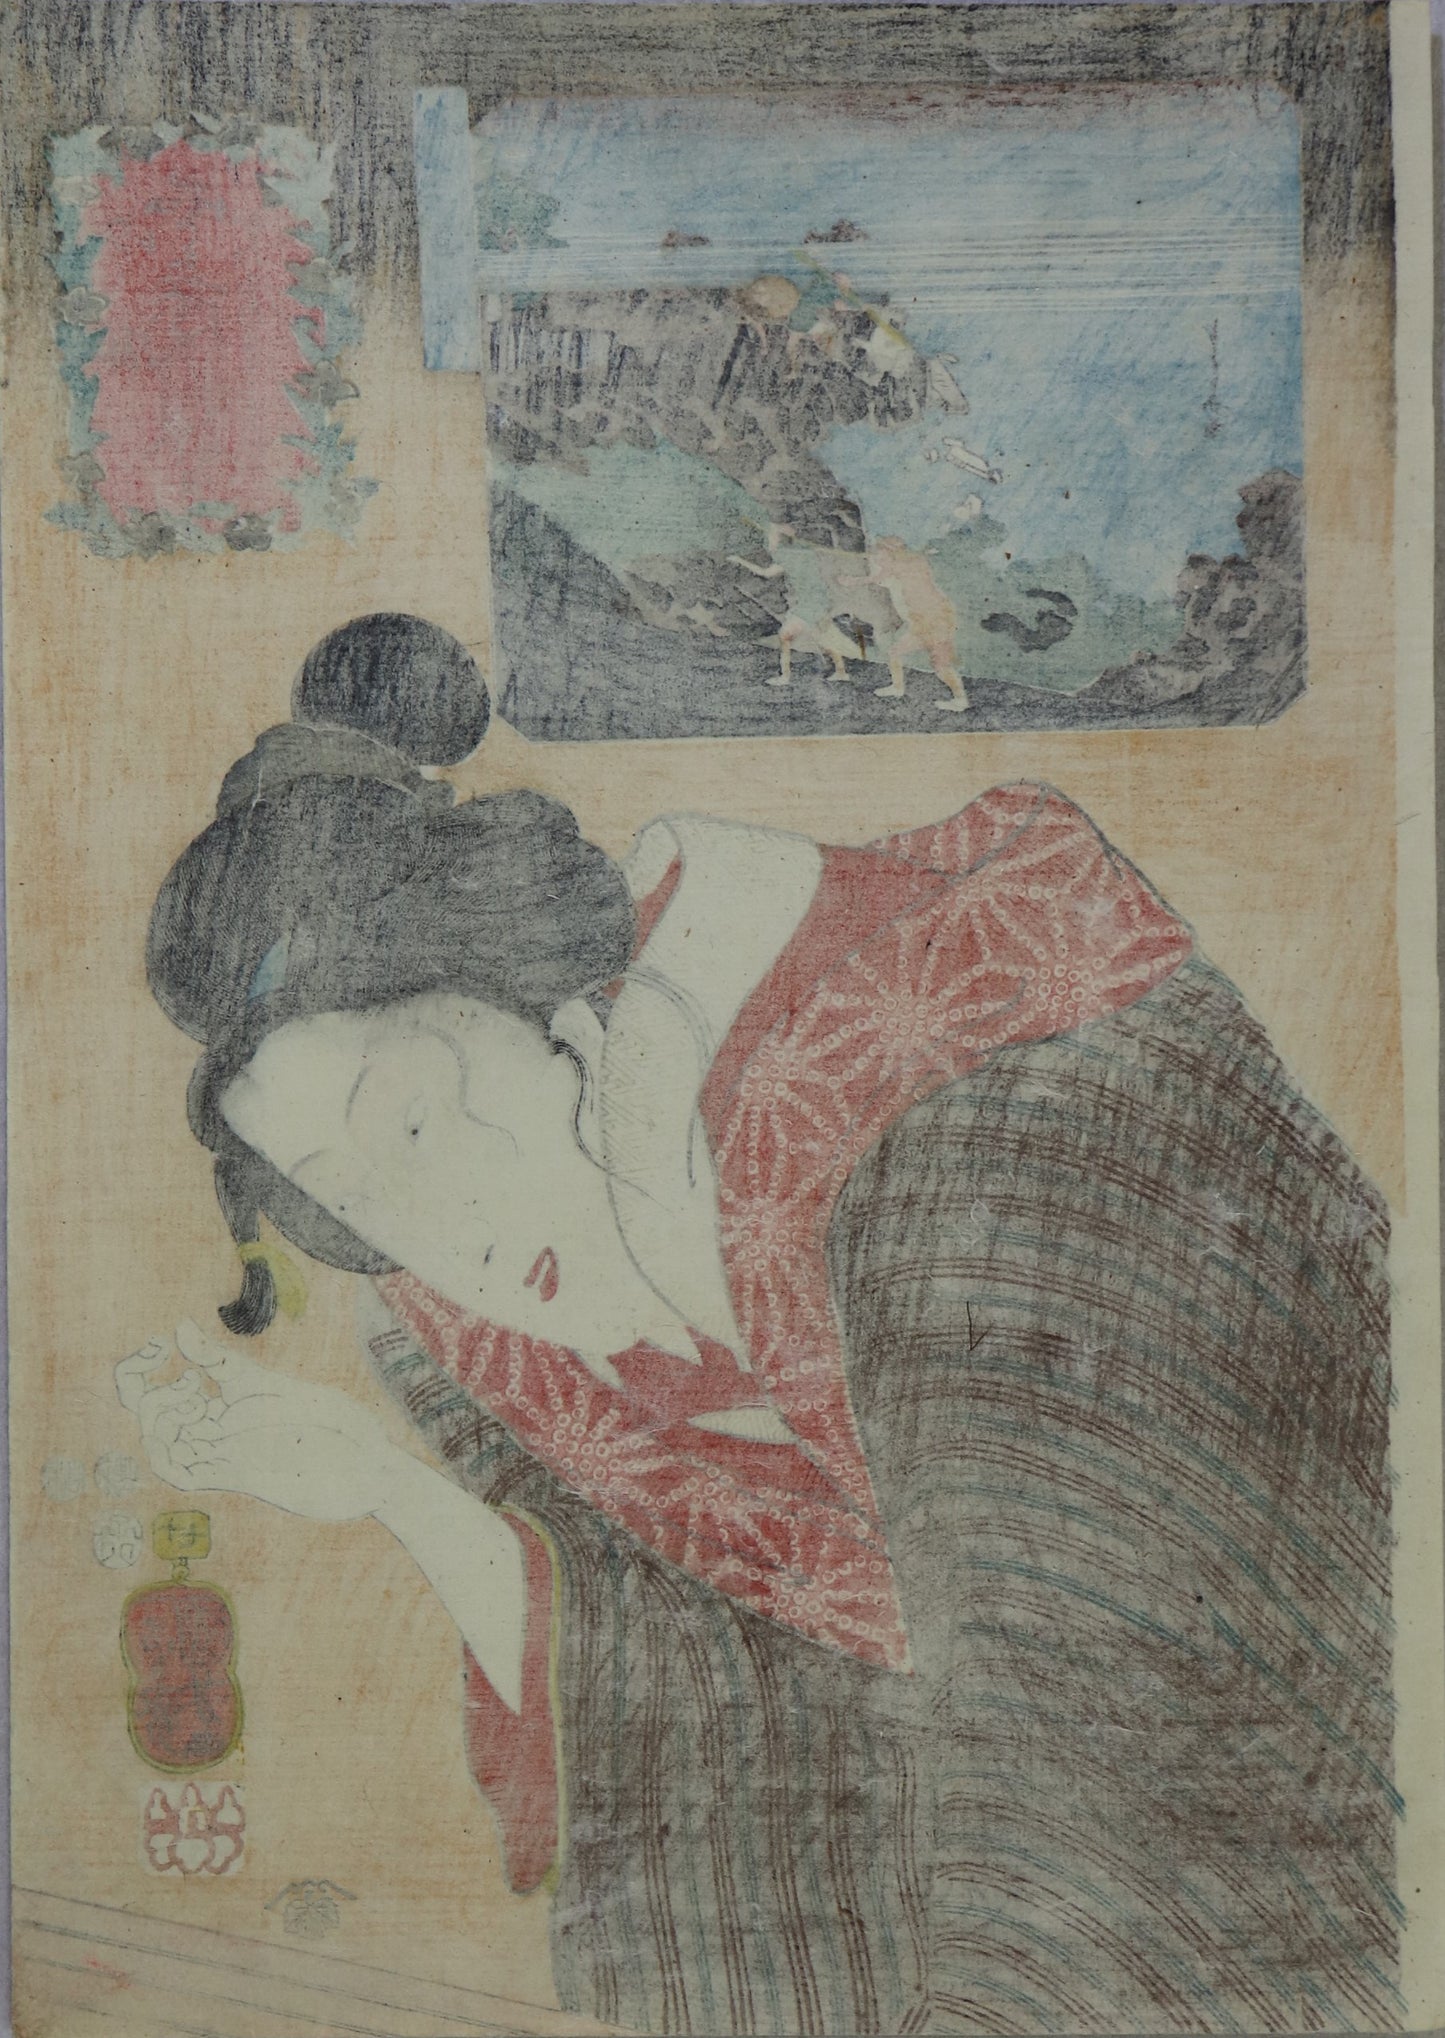 Limestone of Omi Province from the series "Celebrated Products of Mountains and Seas " by Kuniyoshi (1852) / Calcaire de la Province d' Omi de la série "Célèbres produits des Montagnes et des Mers" par Kuniyoshi ( 1852)